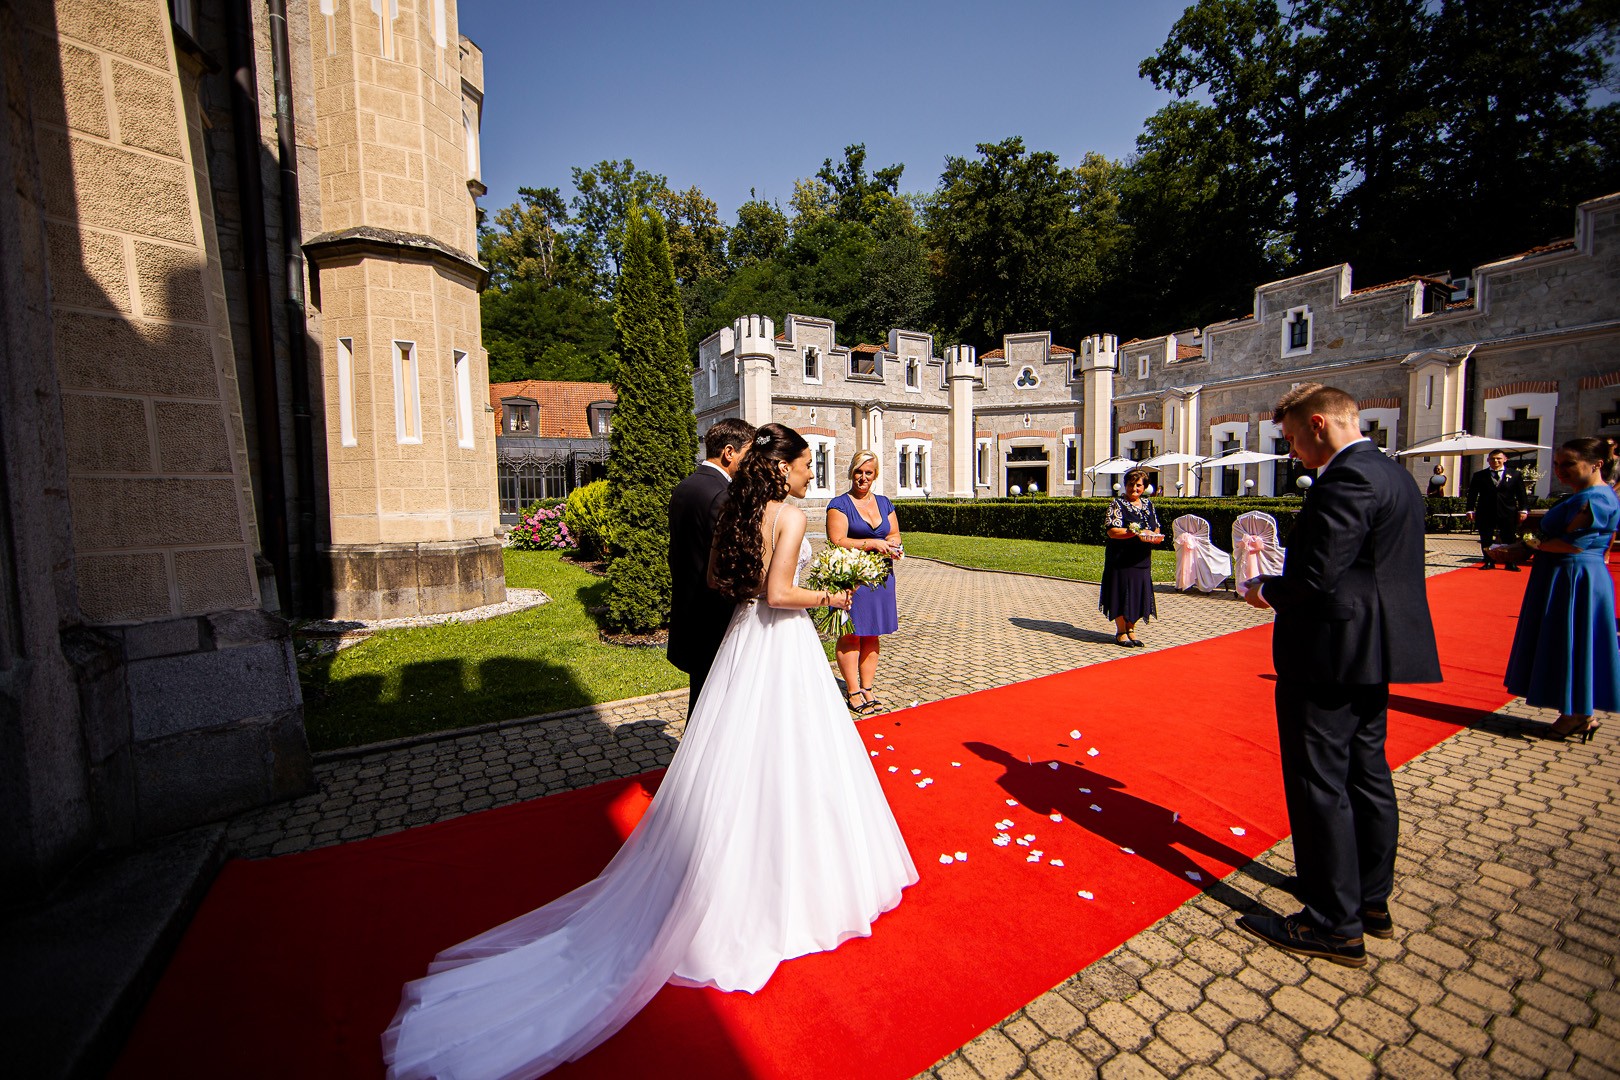 Picturesque dream wedding of Kloudy & Michal in Hluboká nad Vltavou. - 0133.jpg